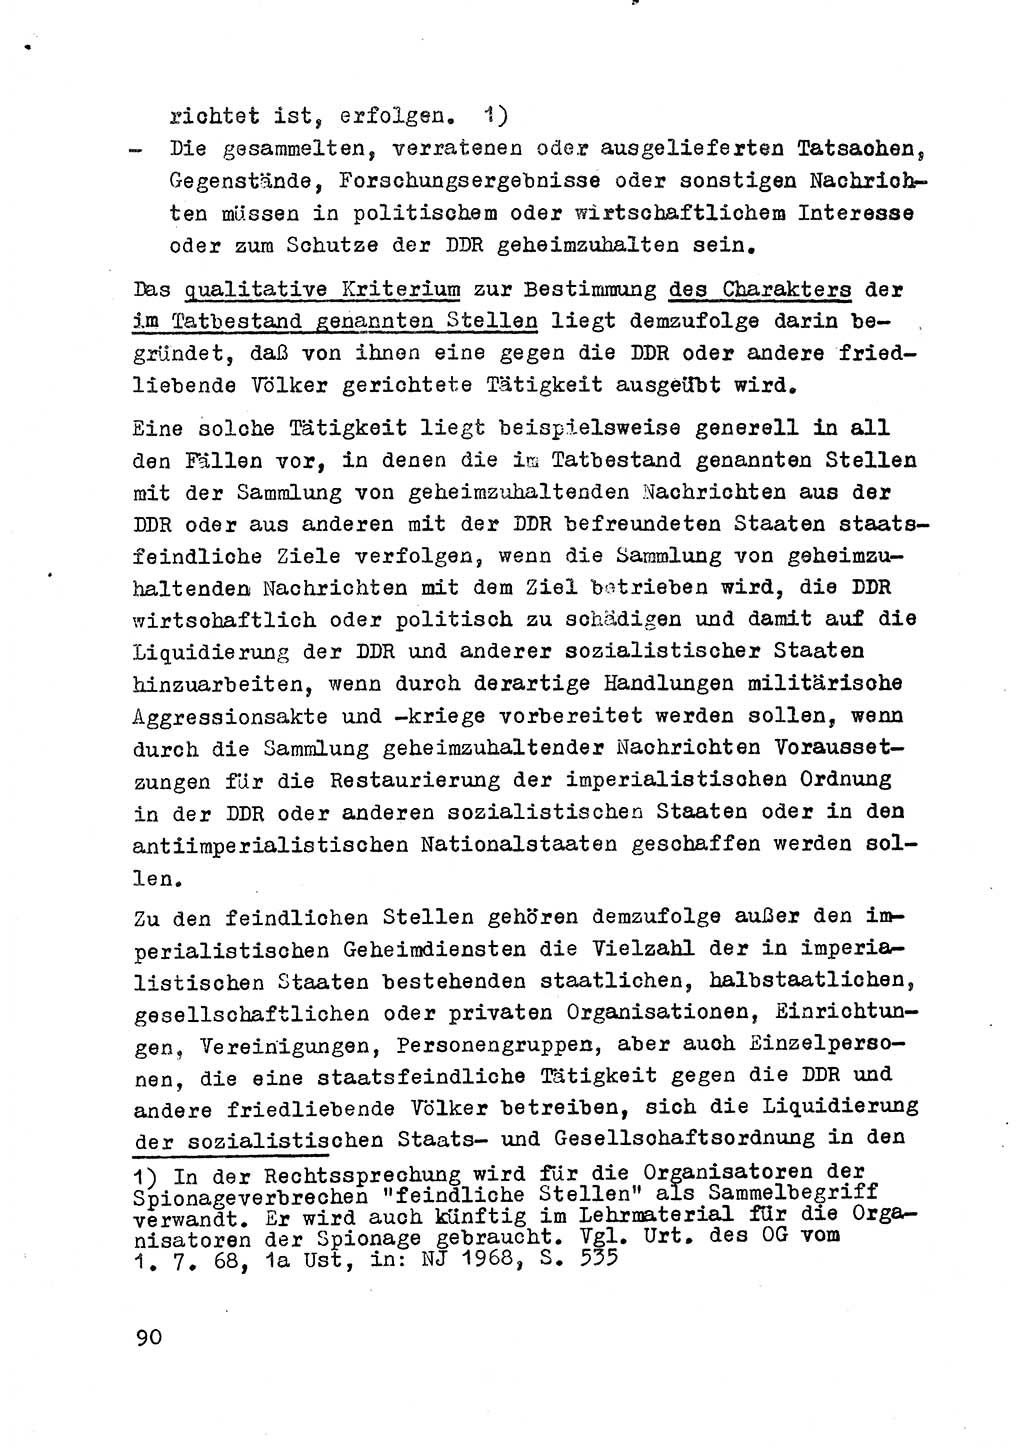 Strafrecht der DDR (Deutsche Demokratische Republik), Besonderer Teil, Lehrmaterial, Heft 2 1969, Seite 90 (Strafr. DDR BT Lehrmat. H. 2 1969, S. 90)